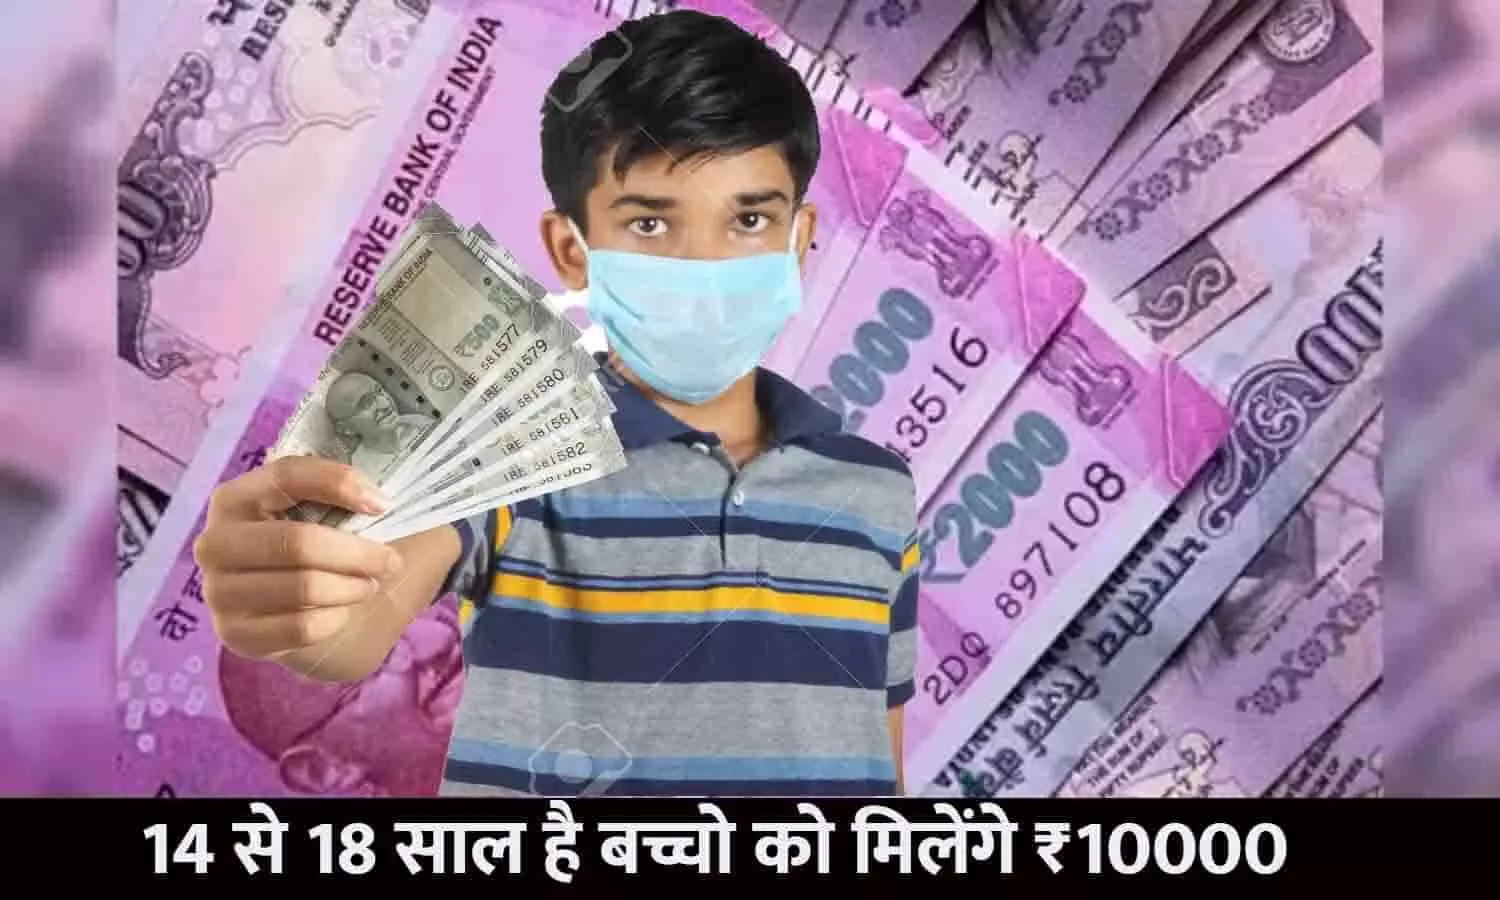 PRAYAS Scheme In Hindi: बड़ा ऐलान! 14 से 18 साल है बच्चो को मिलेंगे ₹10000